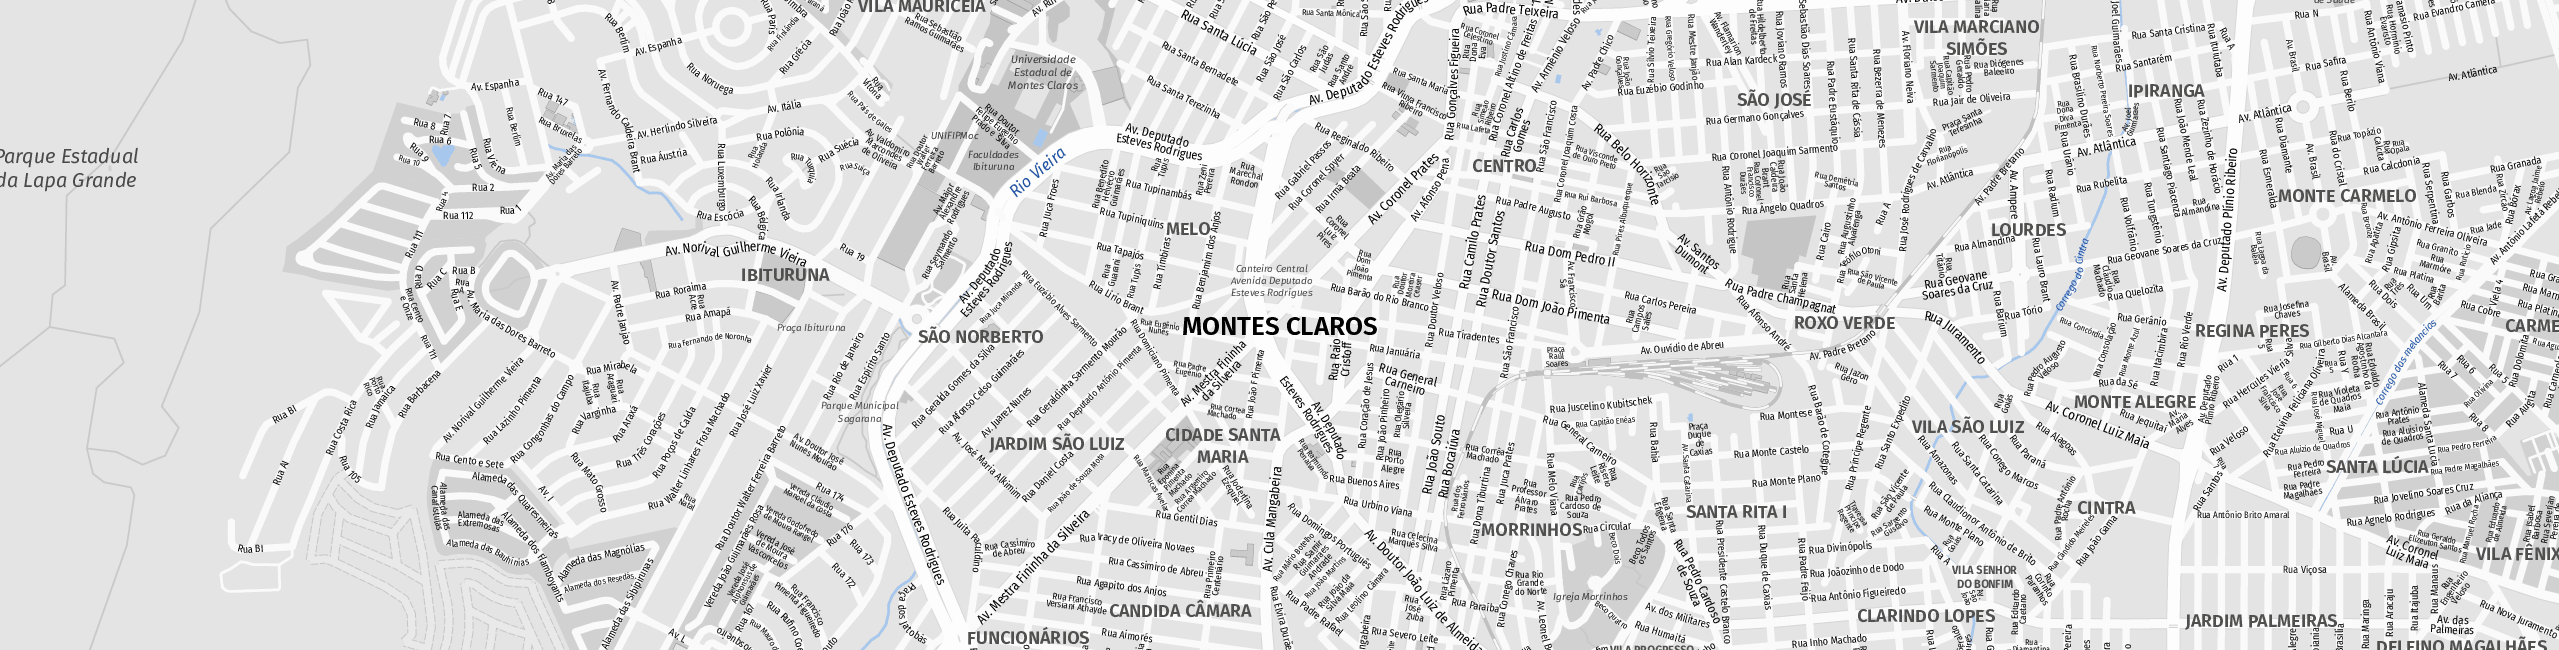 Stadtplan Montes Claros zum Downloaden.